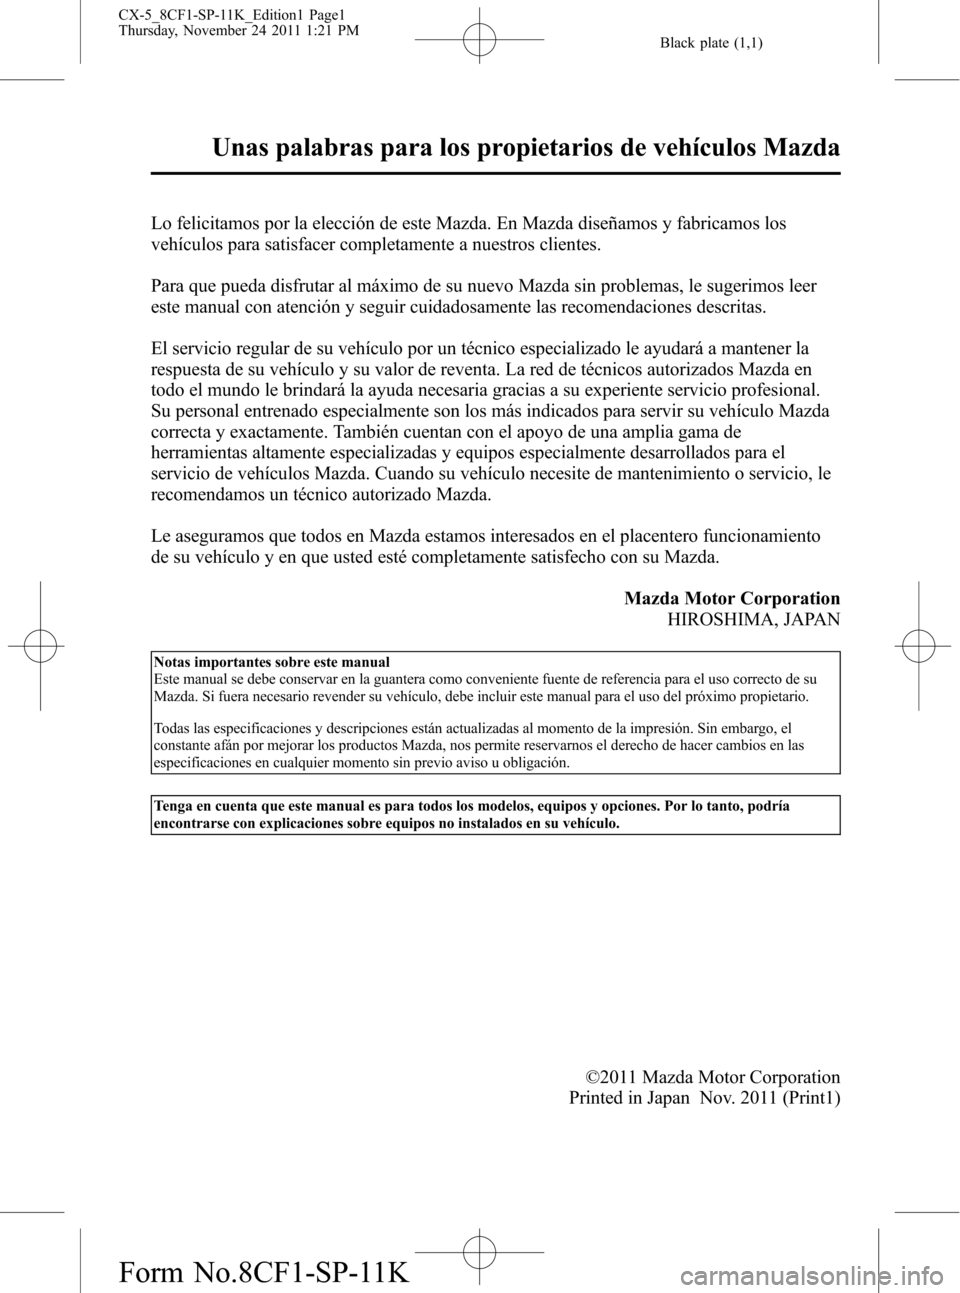 MAZDA MODEL CX-5 2012  Manual del propietario (in Spanish)  